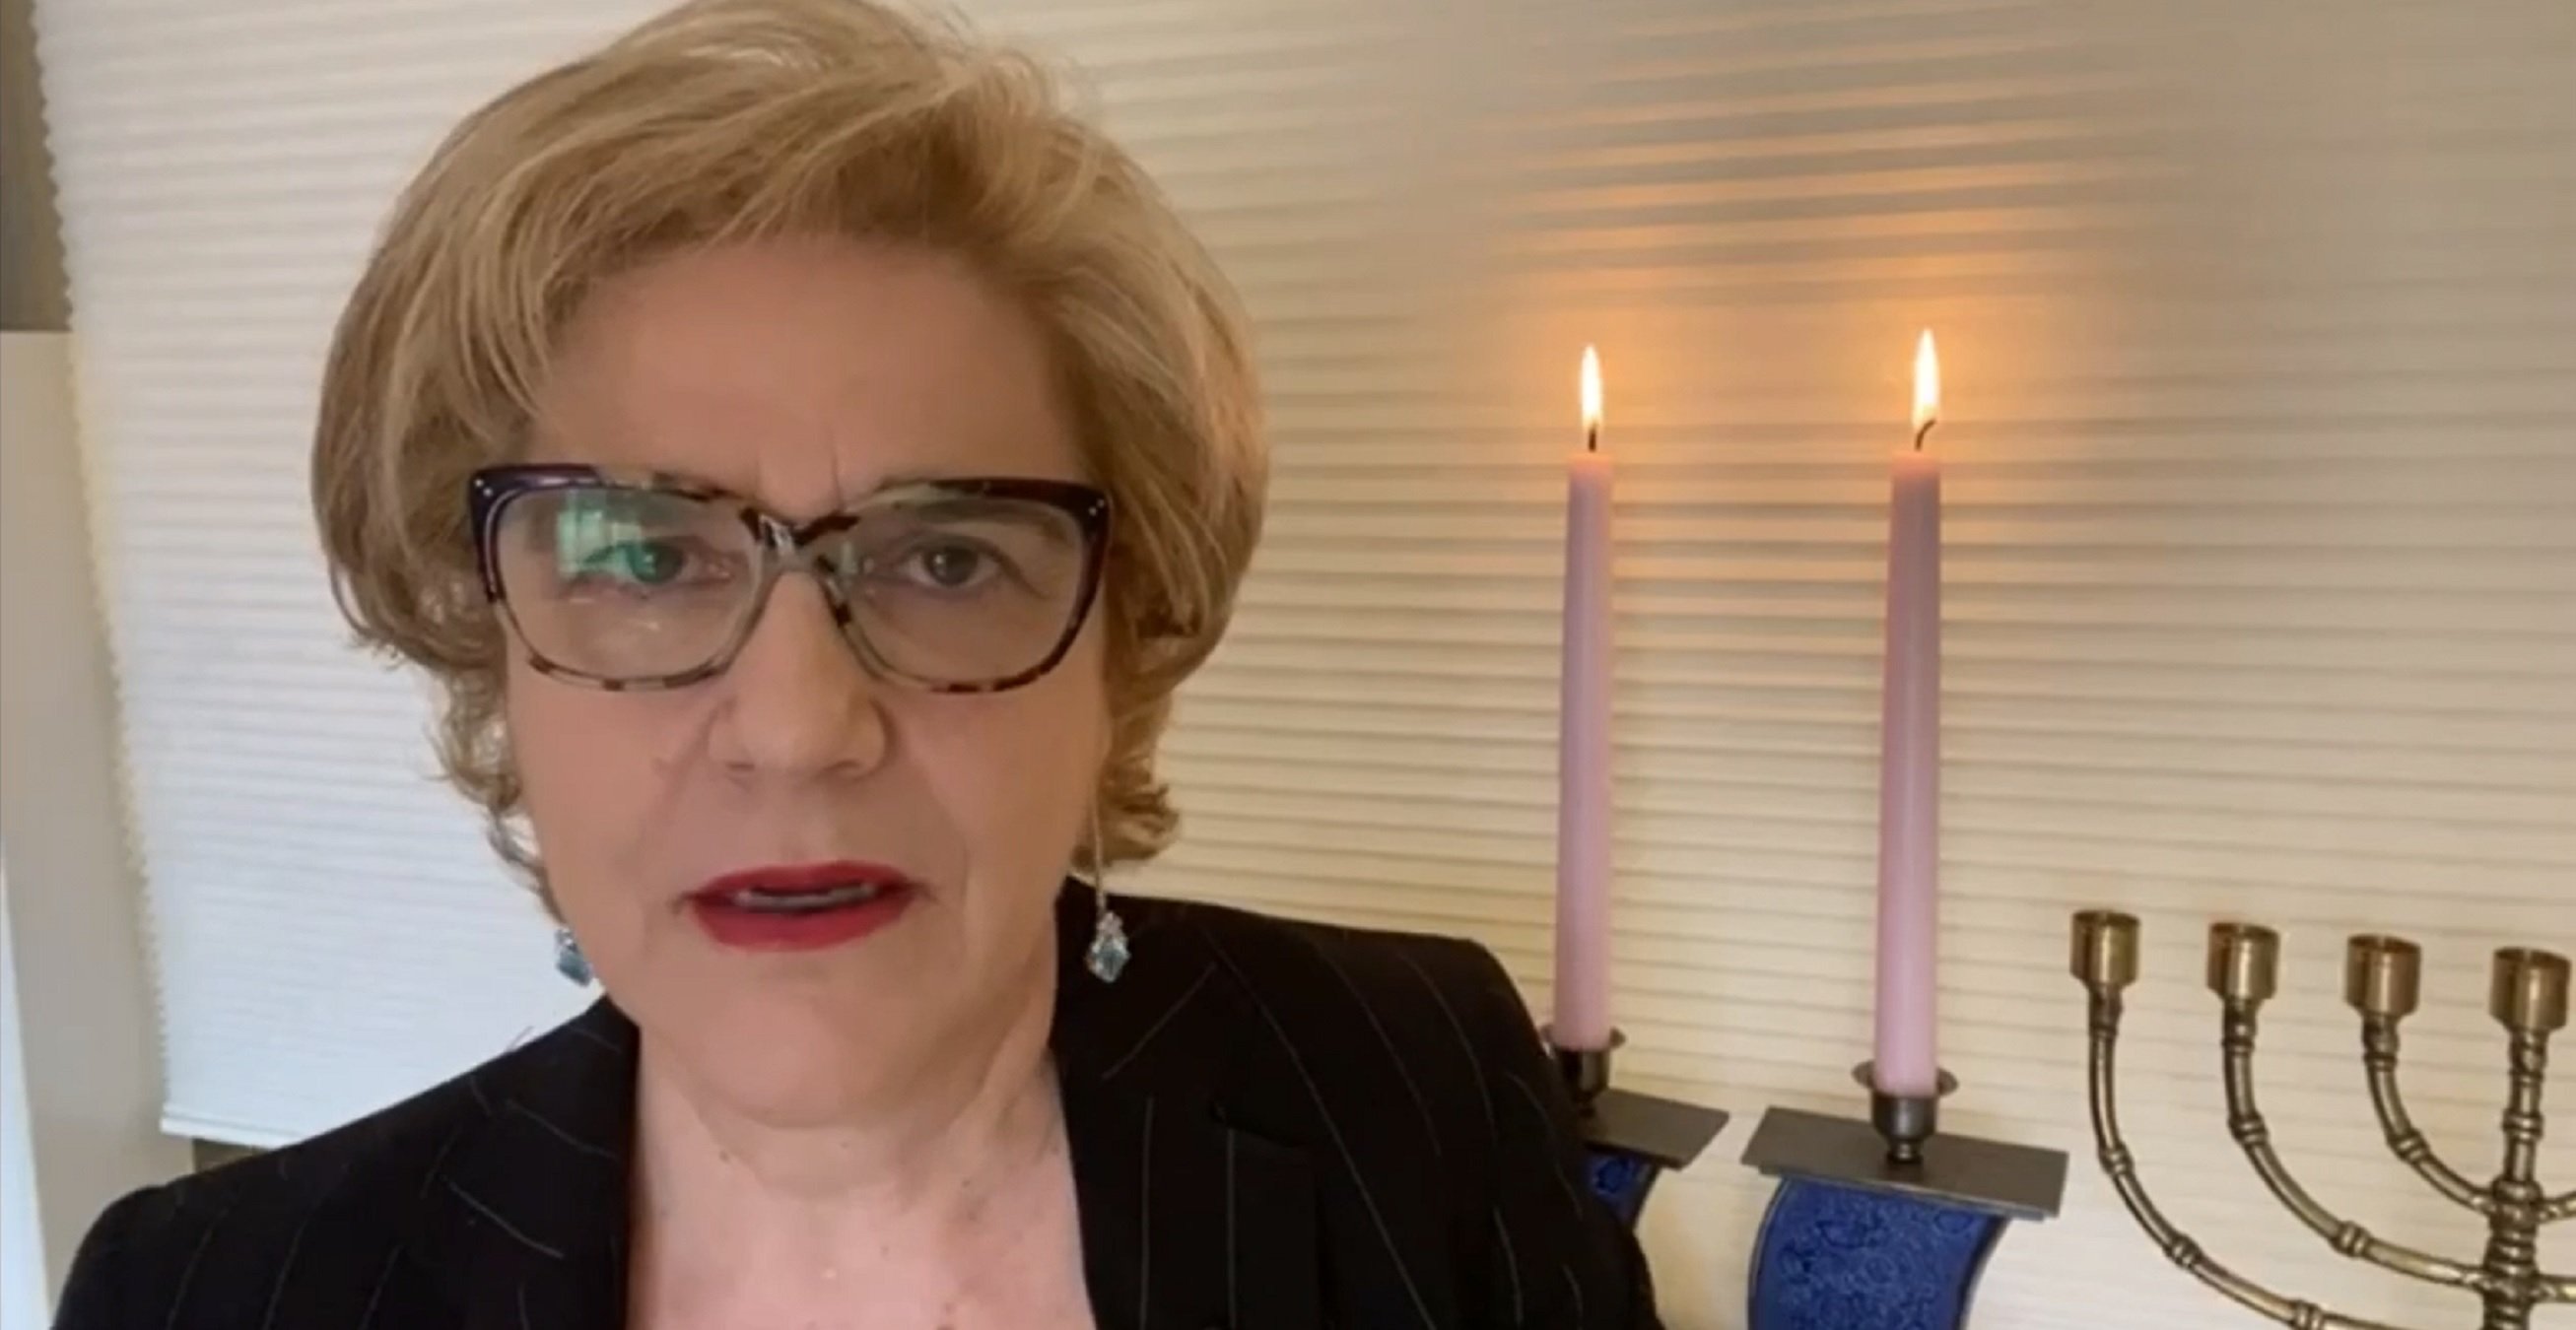 Pilar Rahola, imprescindible: vídeo destrozando a los nazis, "La peor escoria"